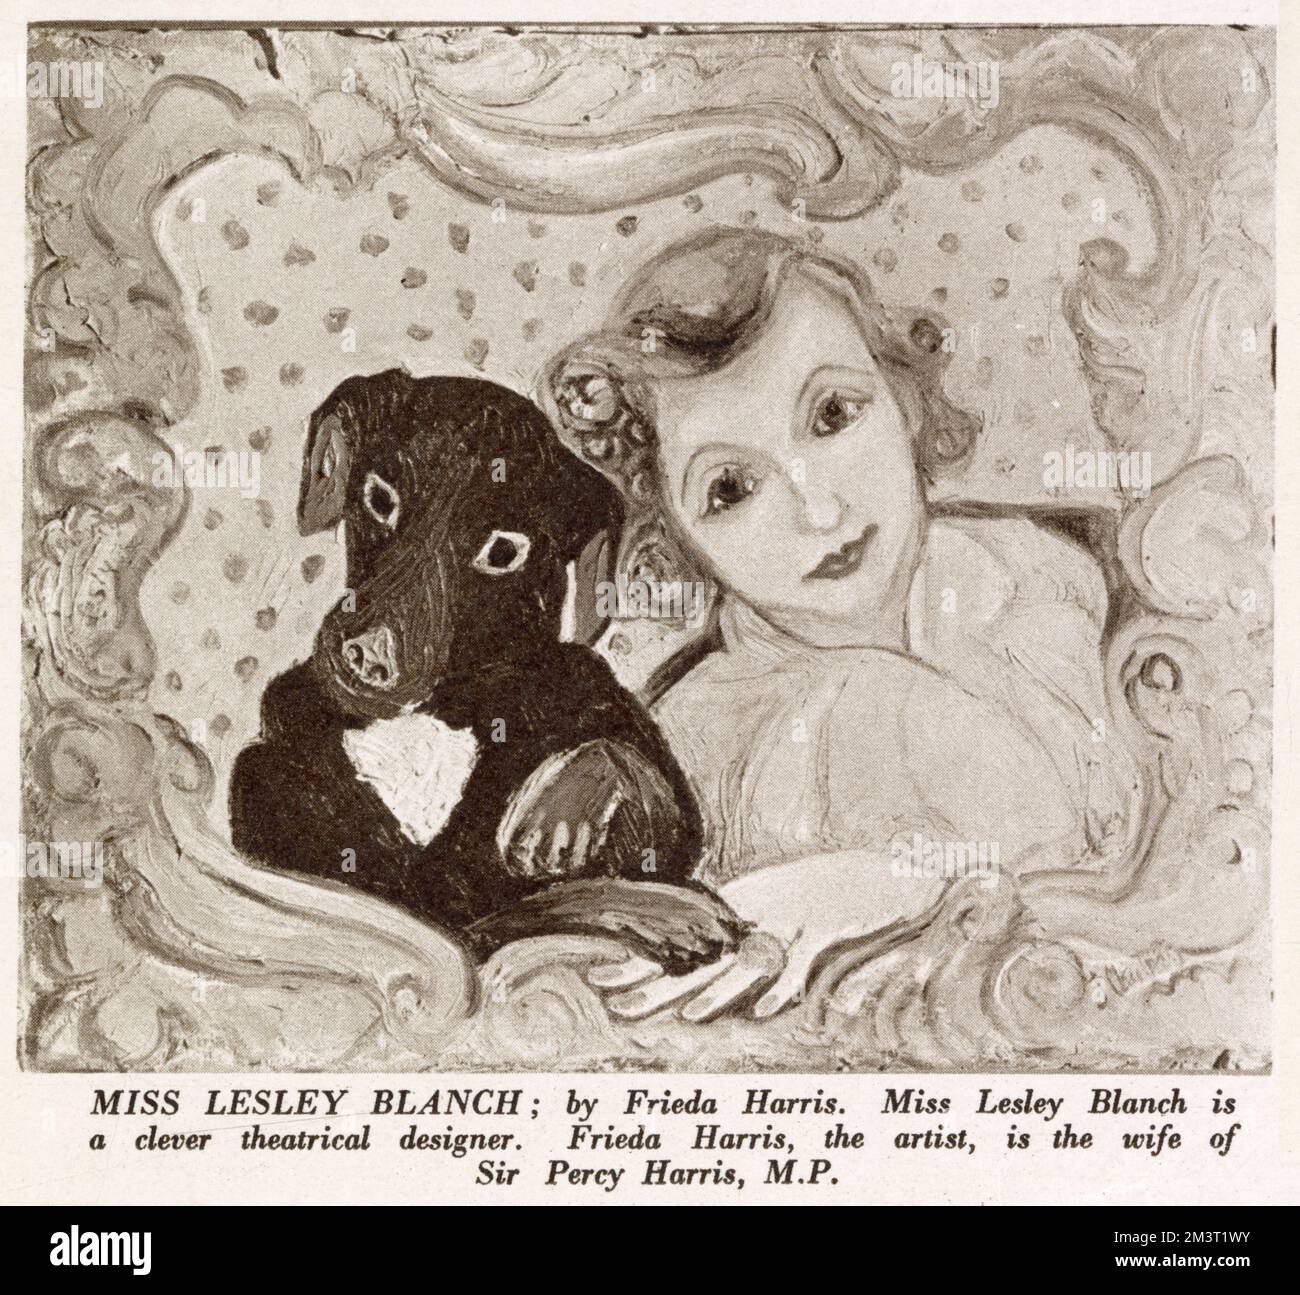 La signorina Leslie Blanch (1904 - 2007), designer teatrale, raffigurata con il suo cane da compagnia in un dipinto di Frieda Harris (1877 - 1962), moglie di Sir Percy Harris MP. Il dipinto è apparso in una mostra alla Wertheim Gallery intitolata: "MRS and Miss 1933". Foto Stock